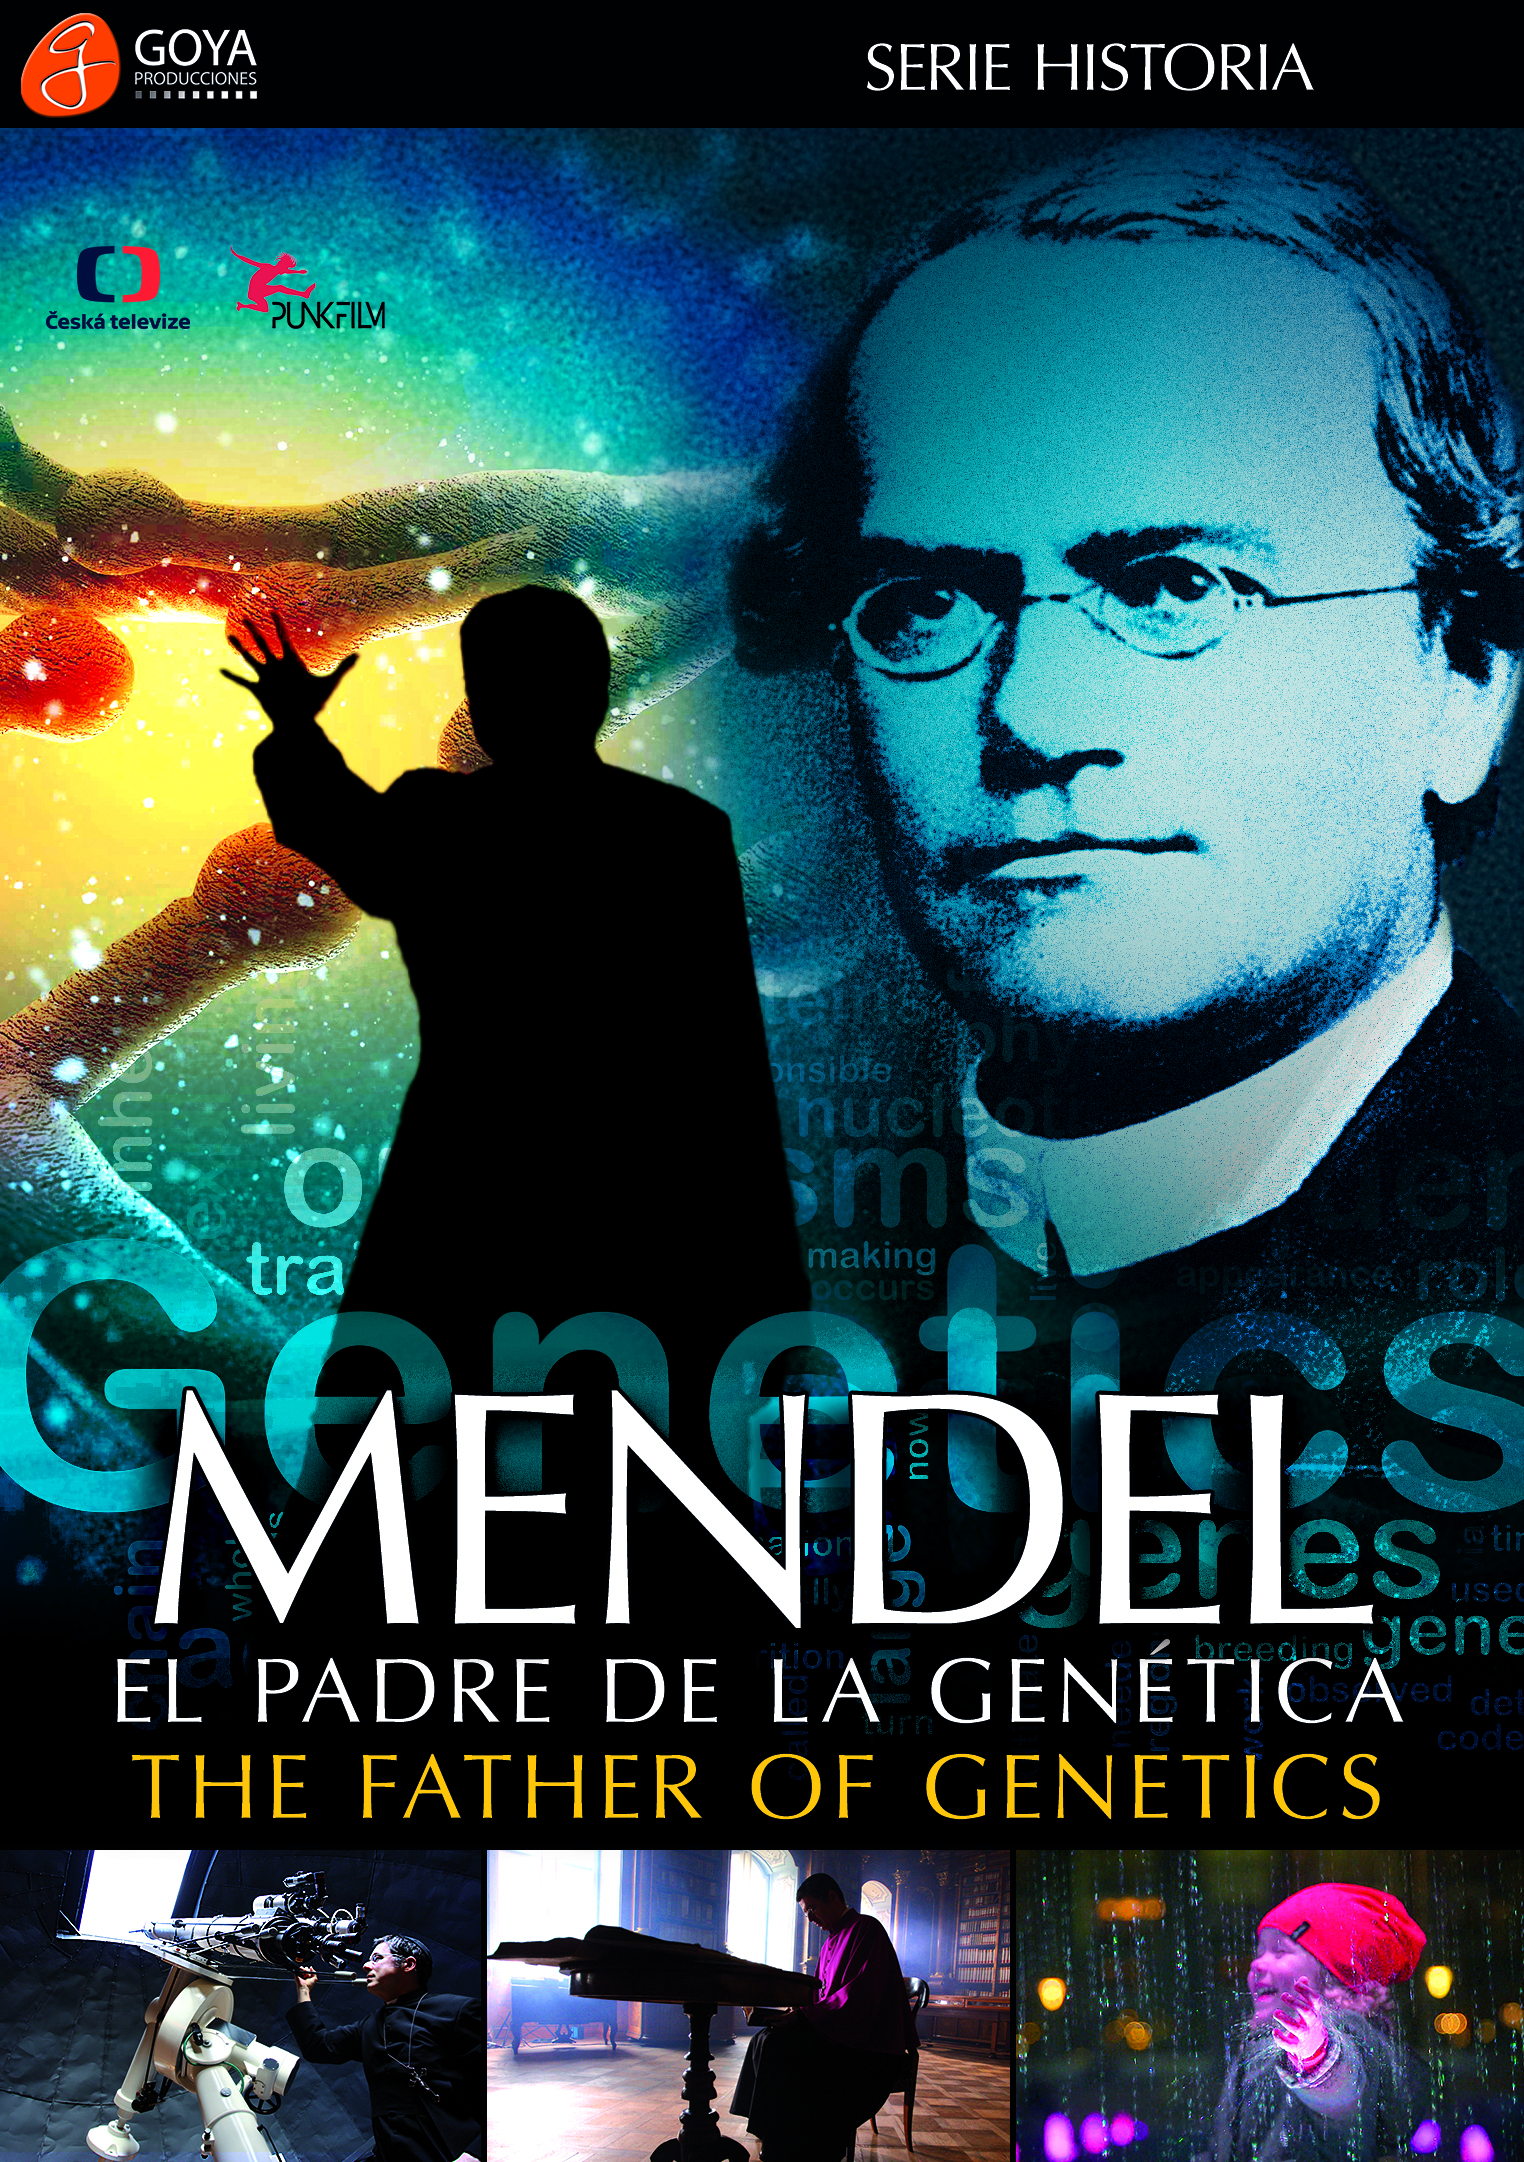 Mendel: El padre de la genetica